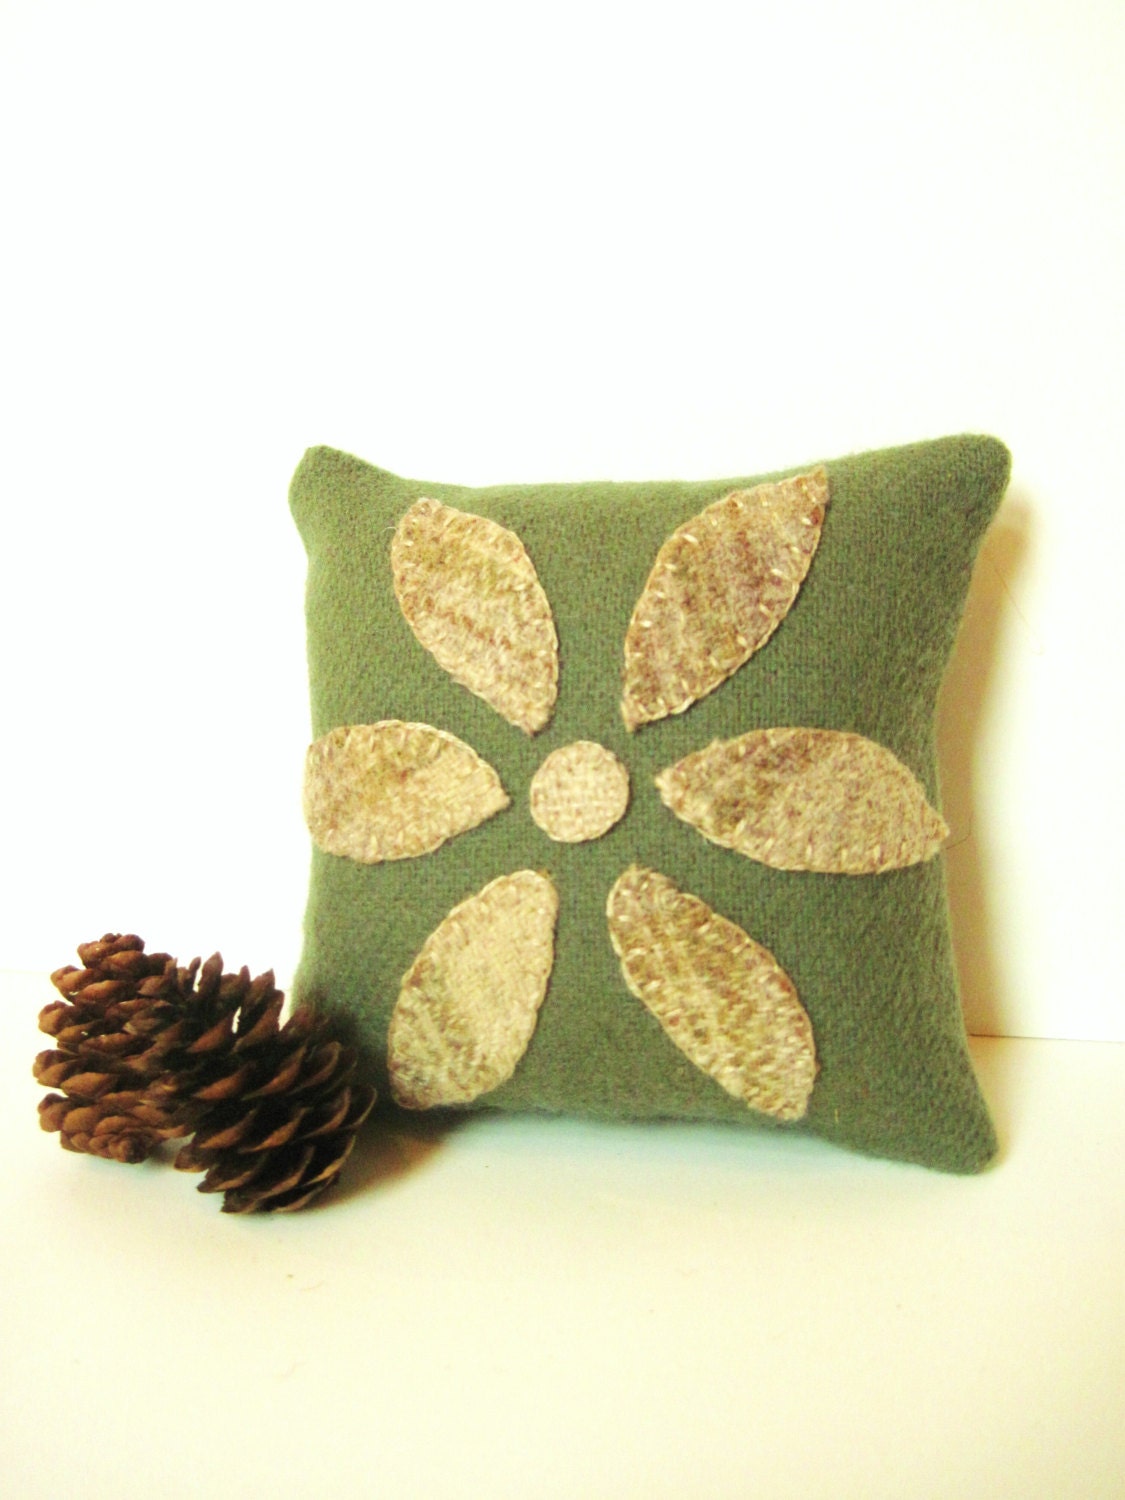 Decorative Pillow / Balsam Pillow / Spring Pillow / Wool Pillow / Rustic Pillow / Cabin Pillow / Flower Pillow / Green Pillow - AwayUpNorth